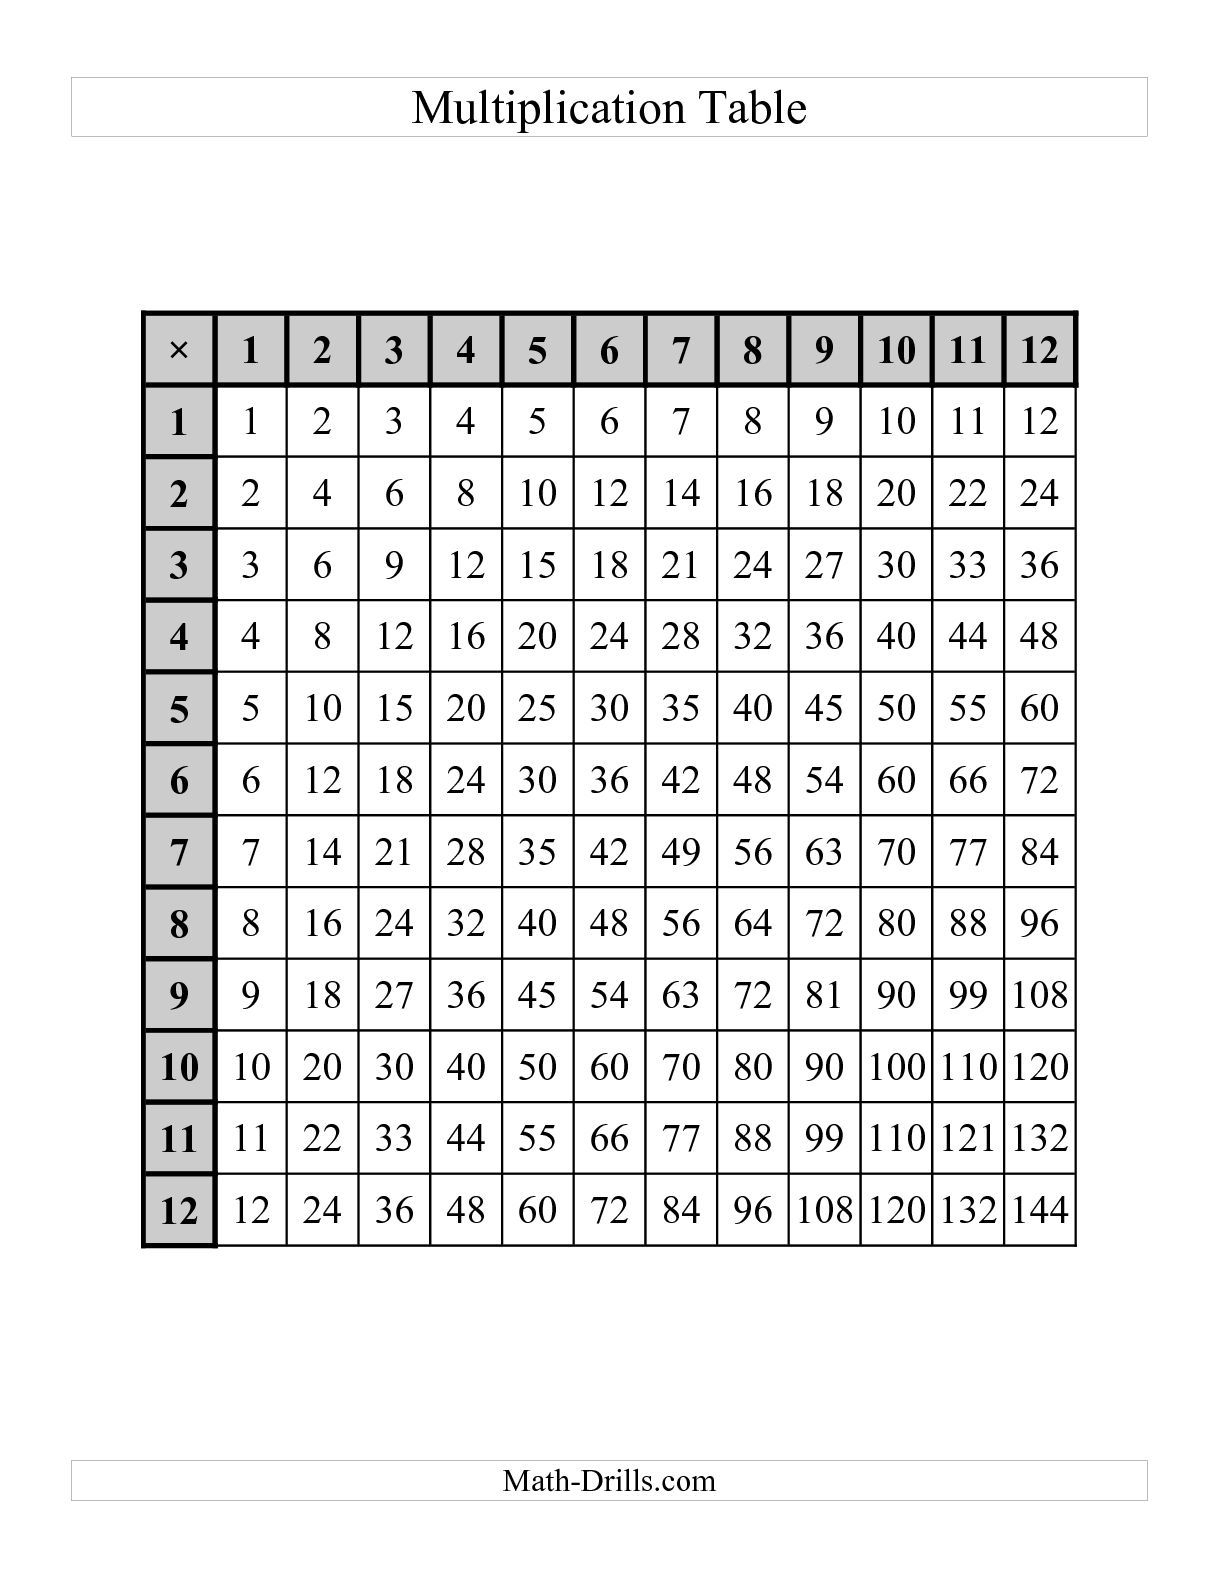 Math Drills Multiplication Chart - Vatan.vtngcf regarding Multiplication Worksheets 5 Minute Drills